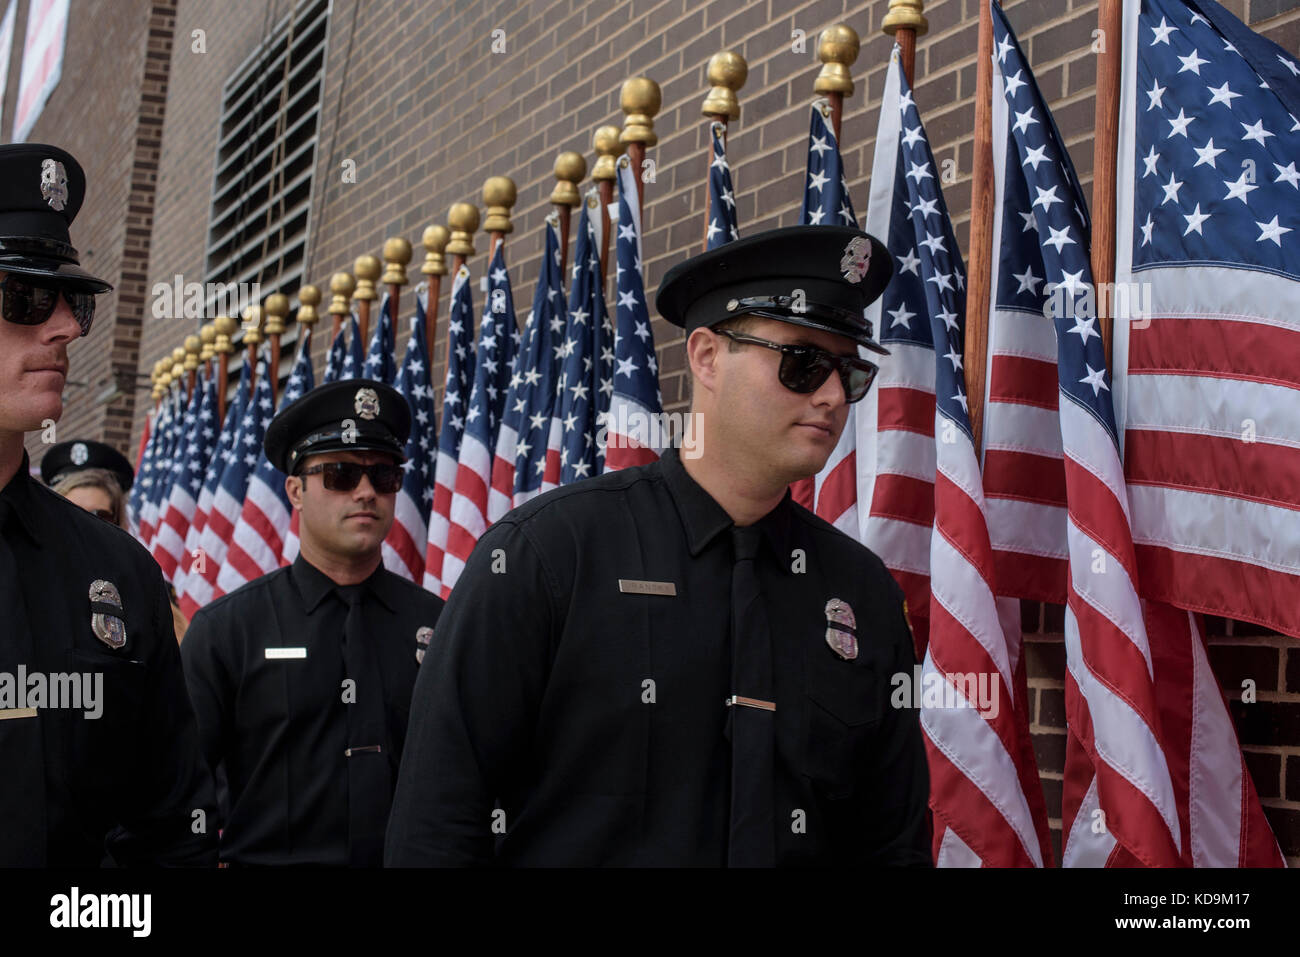 Des pompiers et policiers new yorkais revenant d'une cérémonie. Stock Photo